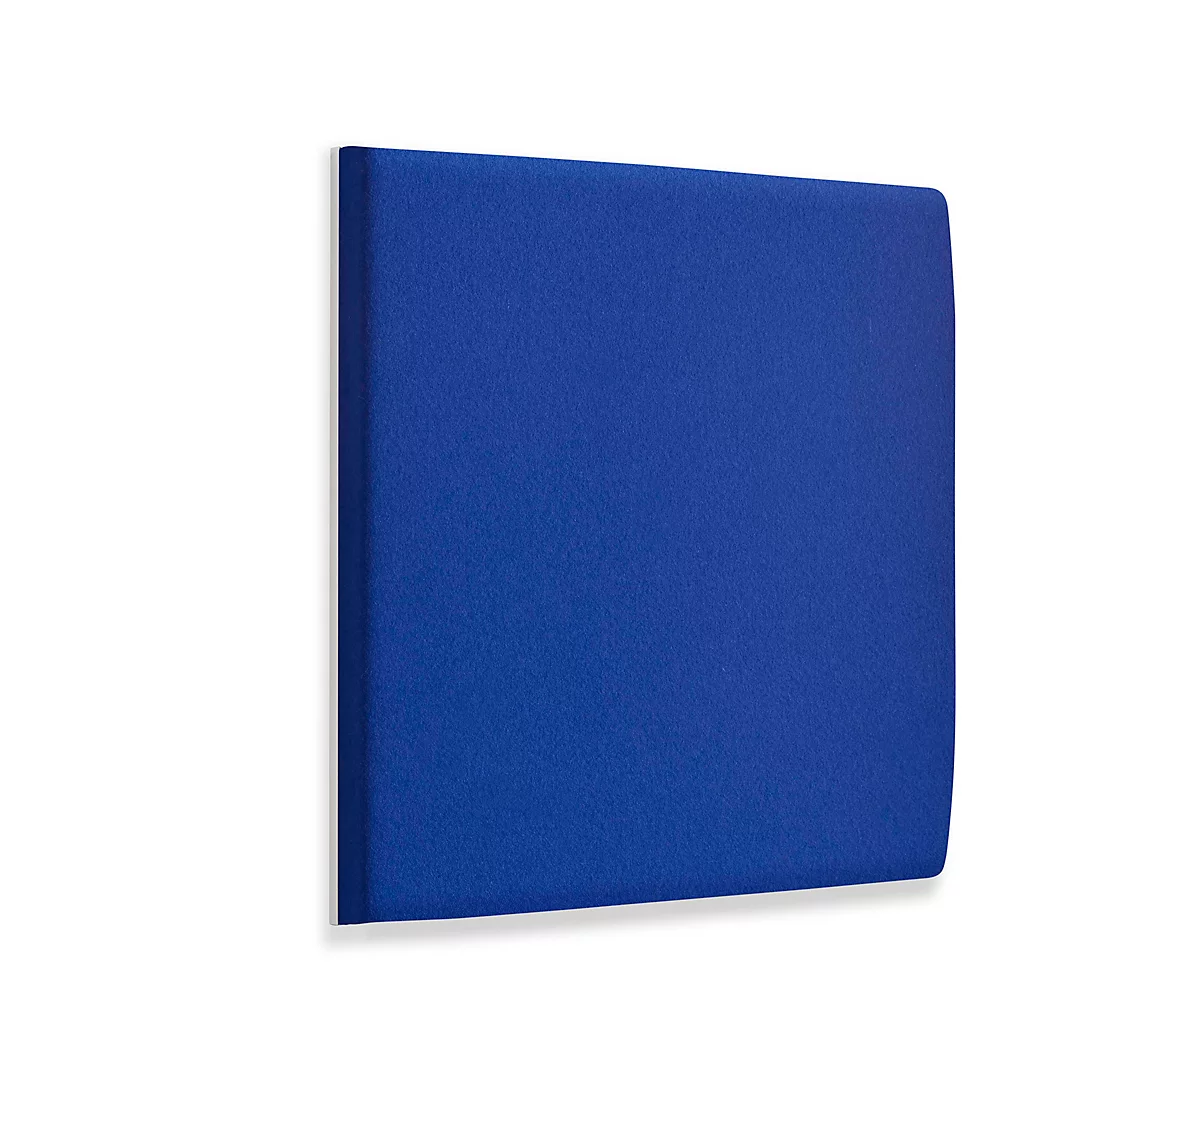 Wandpaneele m. Alurahmen, B 600 x T 600 x H 60 mm, glatte Oberfläche, azurblau